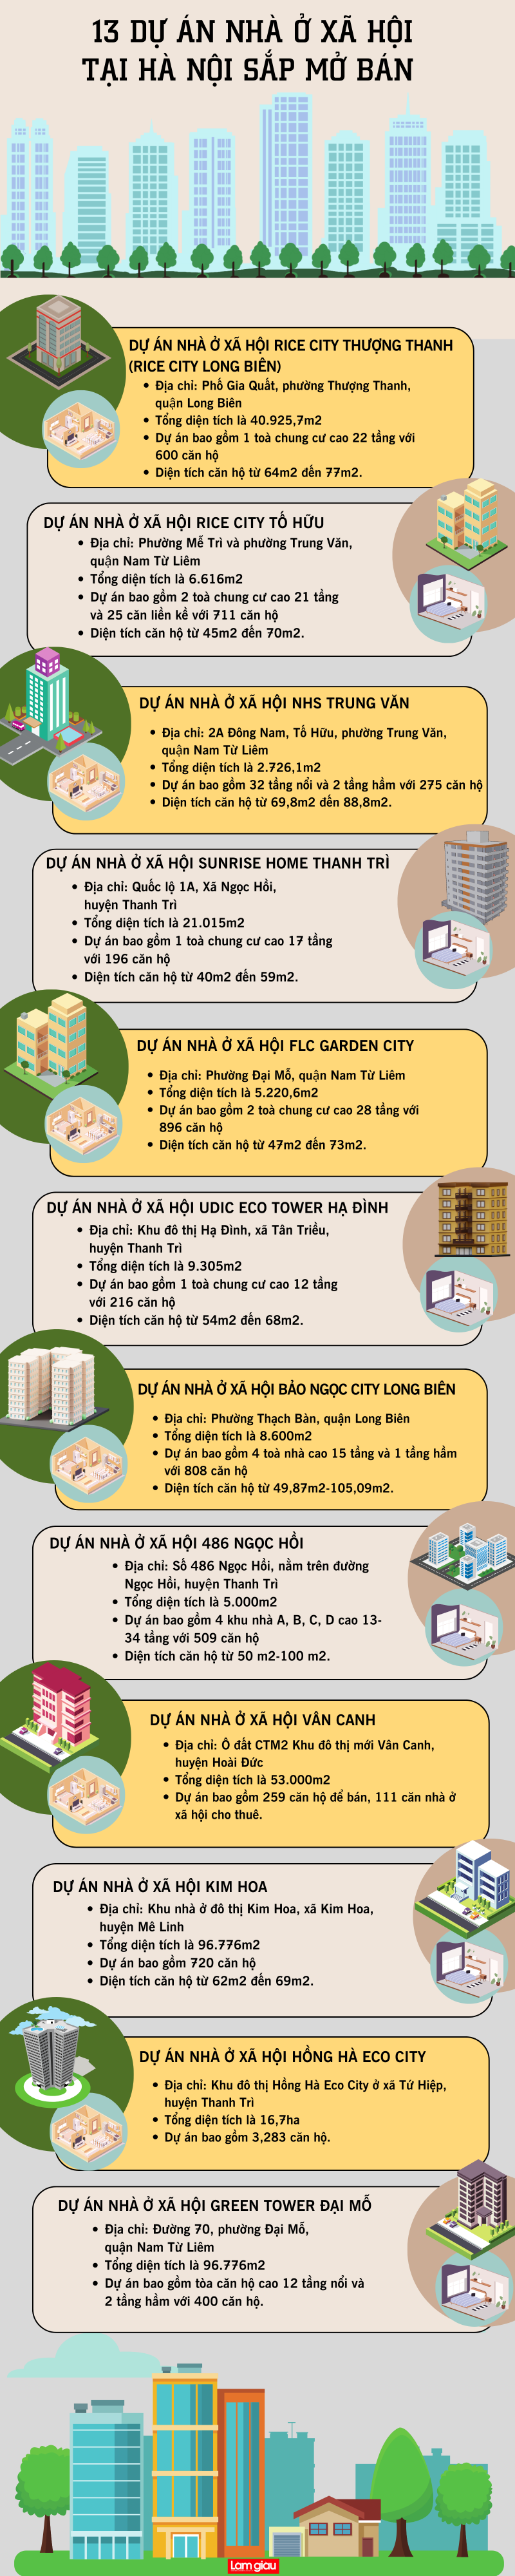 13 dự án nhà ở xã hội tại Hà Nội sắp mở bán